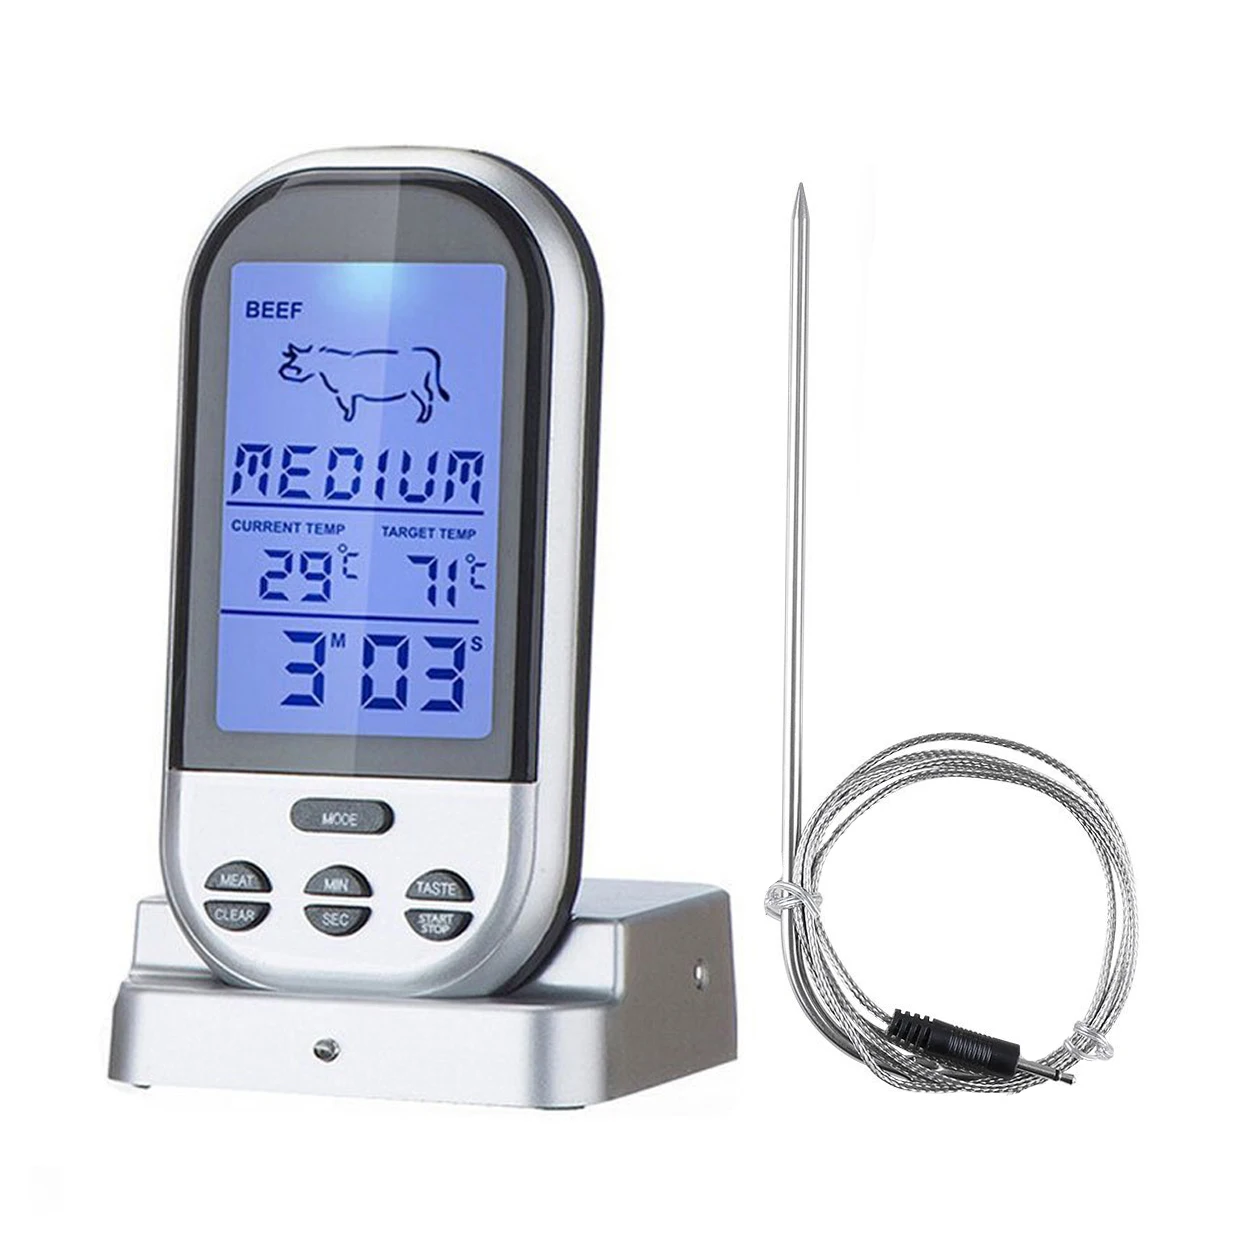 

Беспроводной цифровой термометр RCXAZ, кухонный прибор для измерения температуры мяса, для гриля, барбекю, духовки, с таймером и будильником